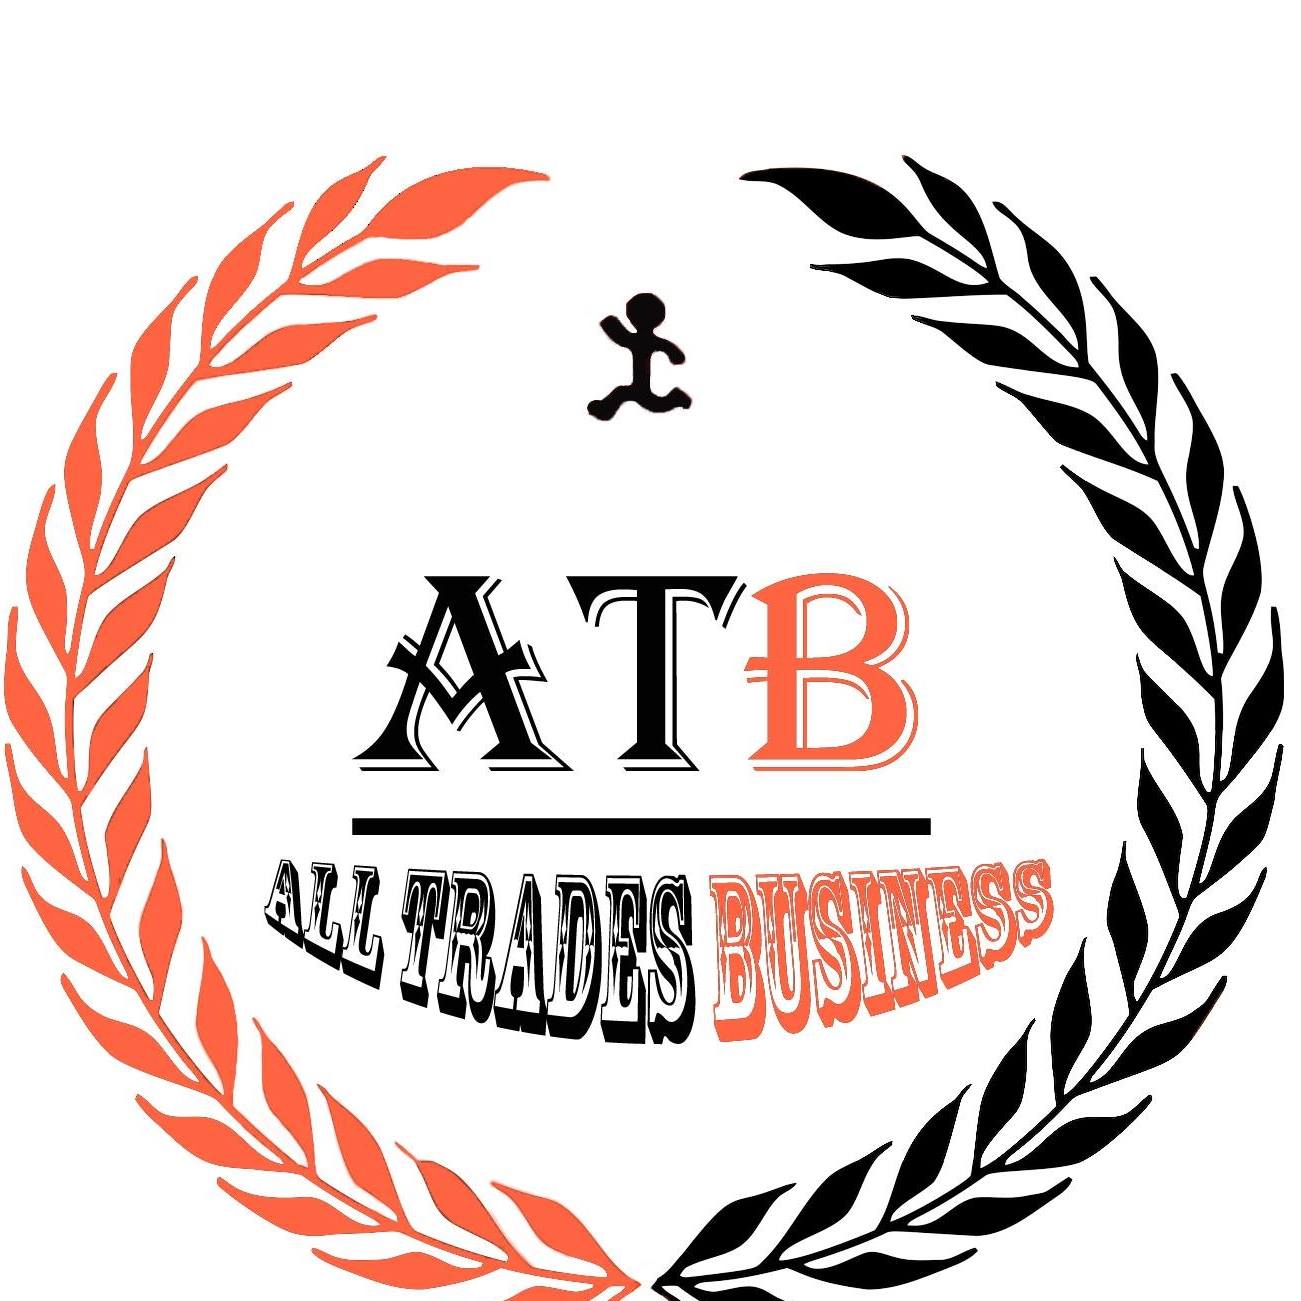 Alltrades business logo